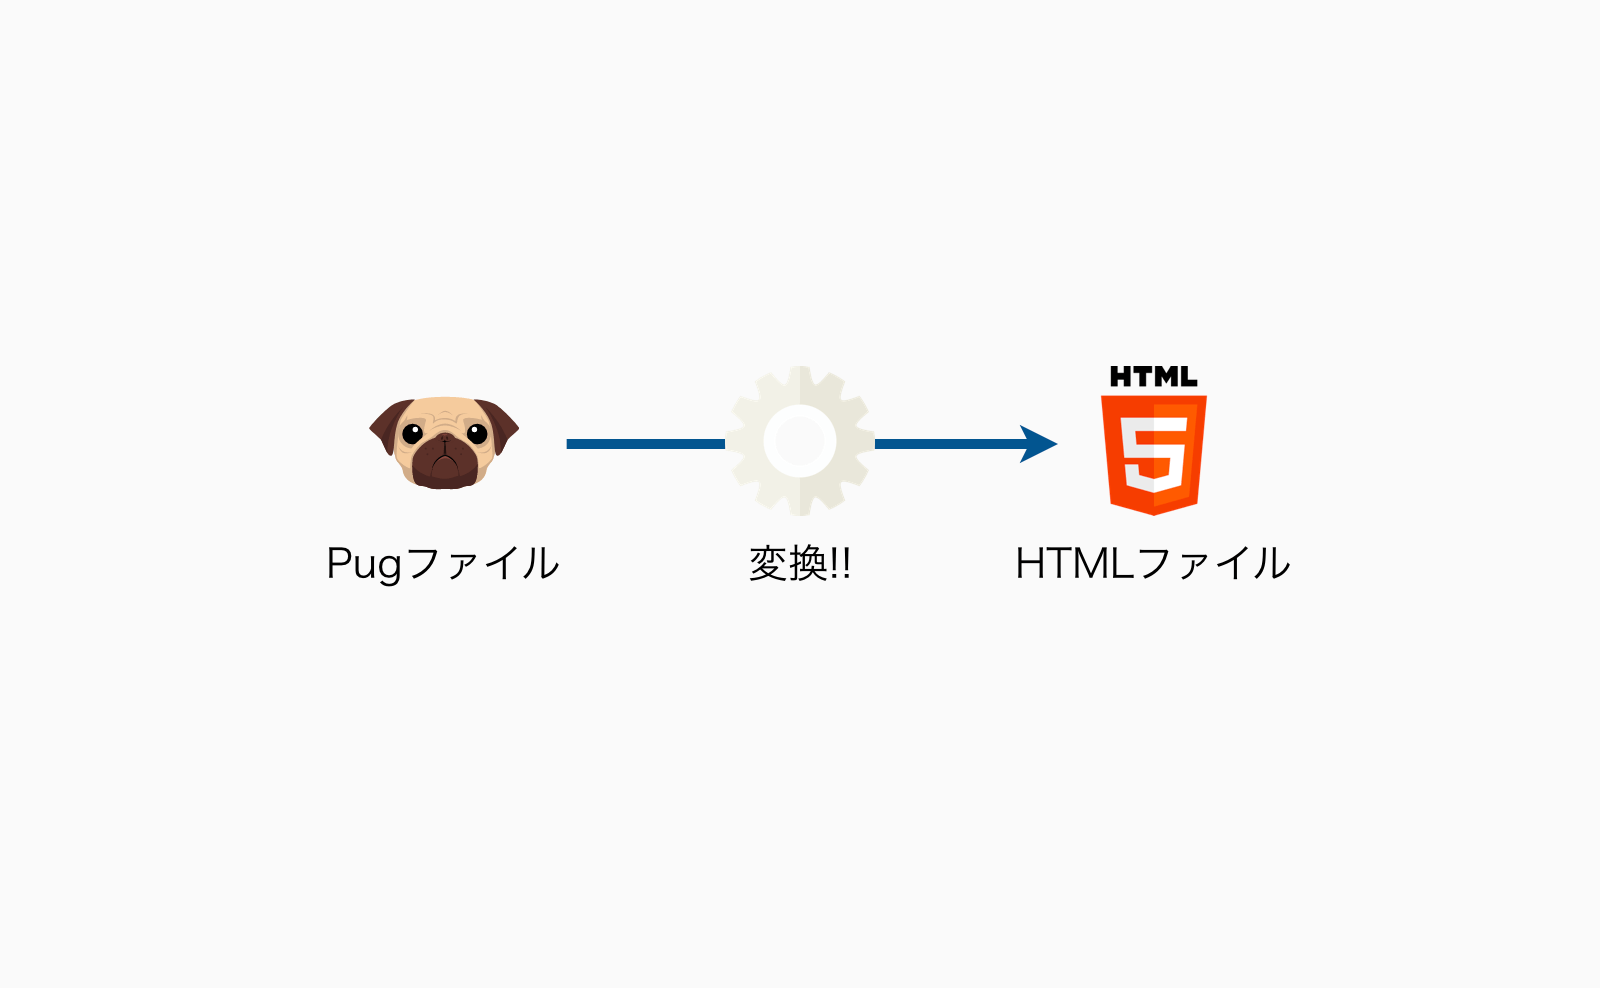 Pugファイルをそのままサーバーにアップせず、HTMLに変換する